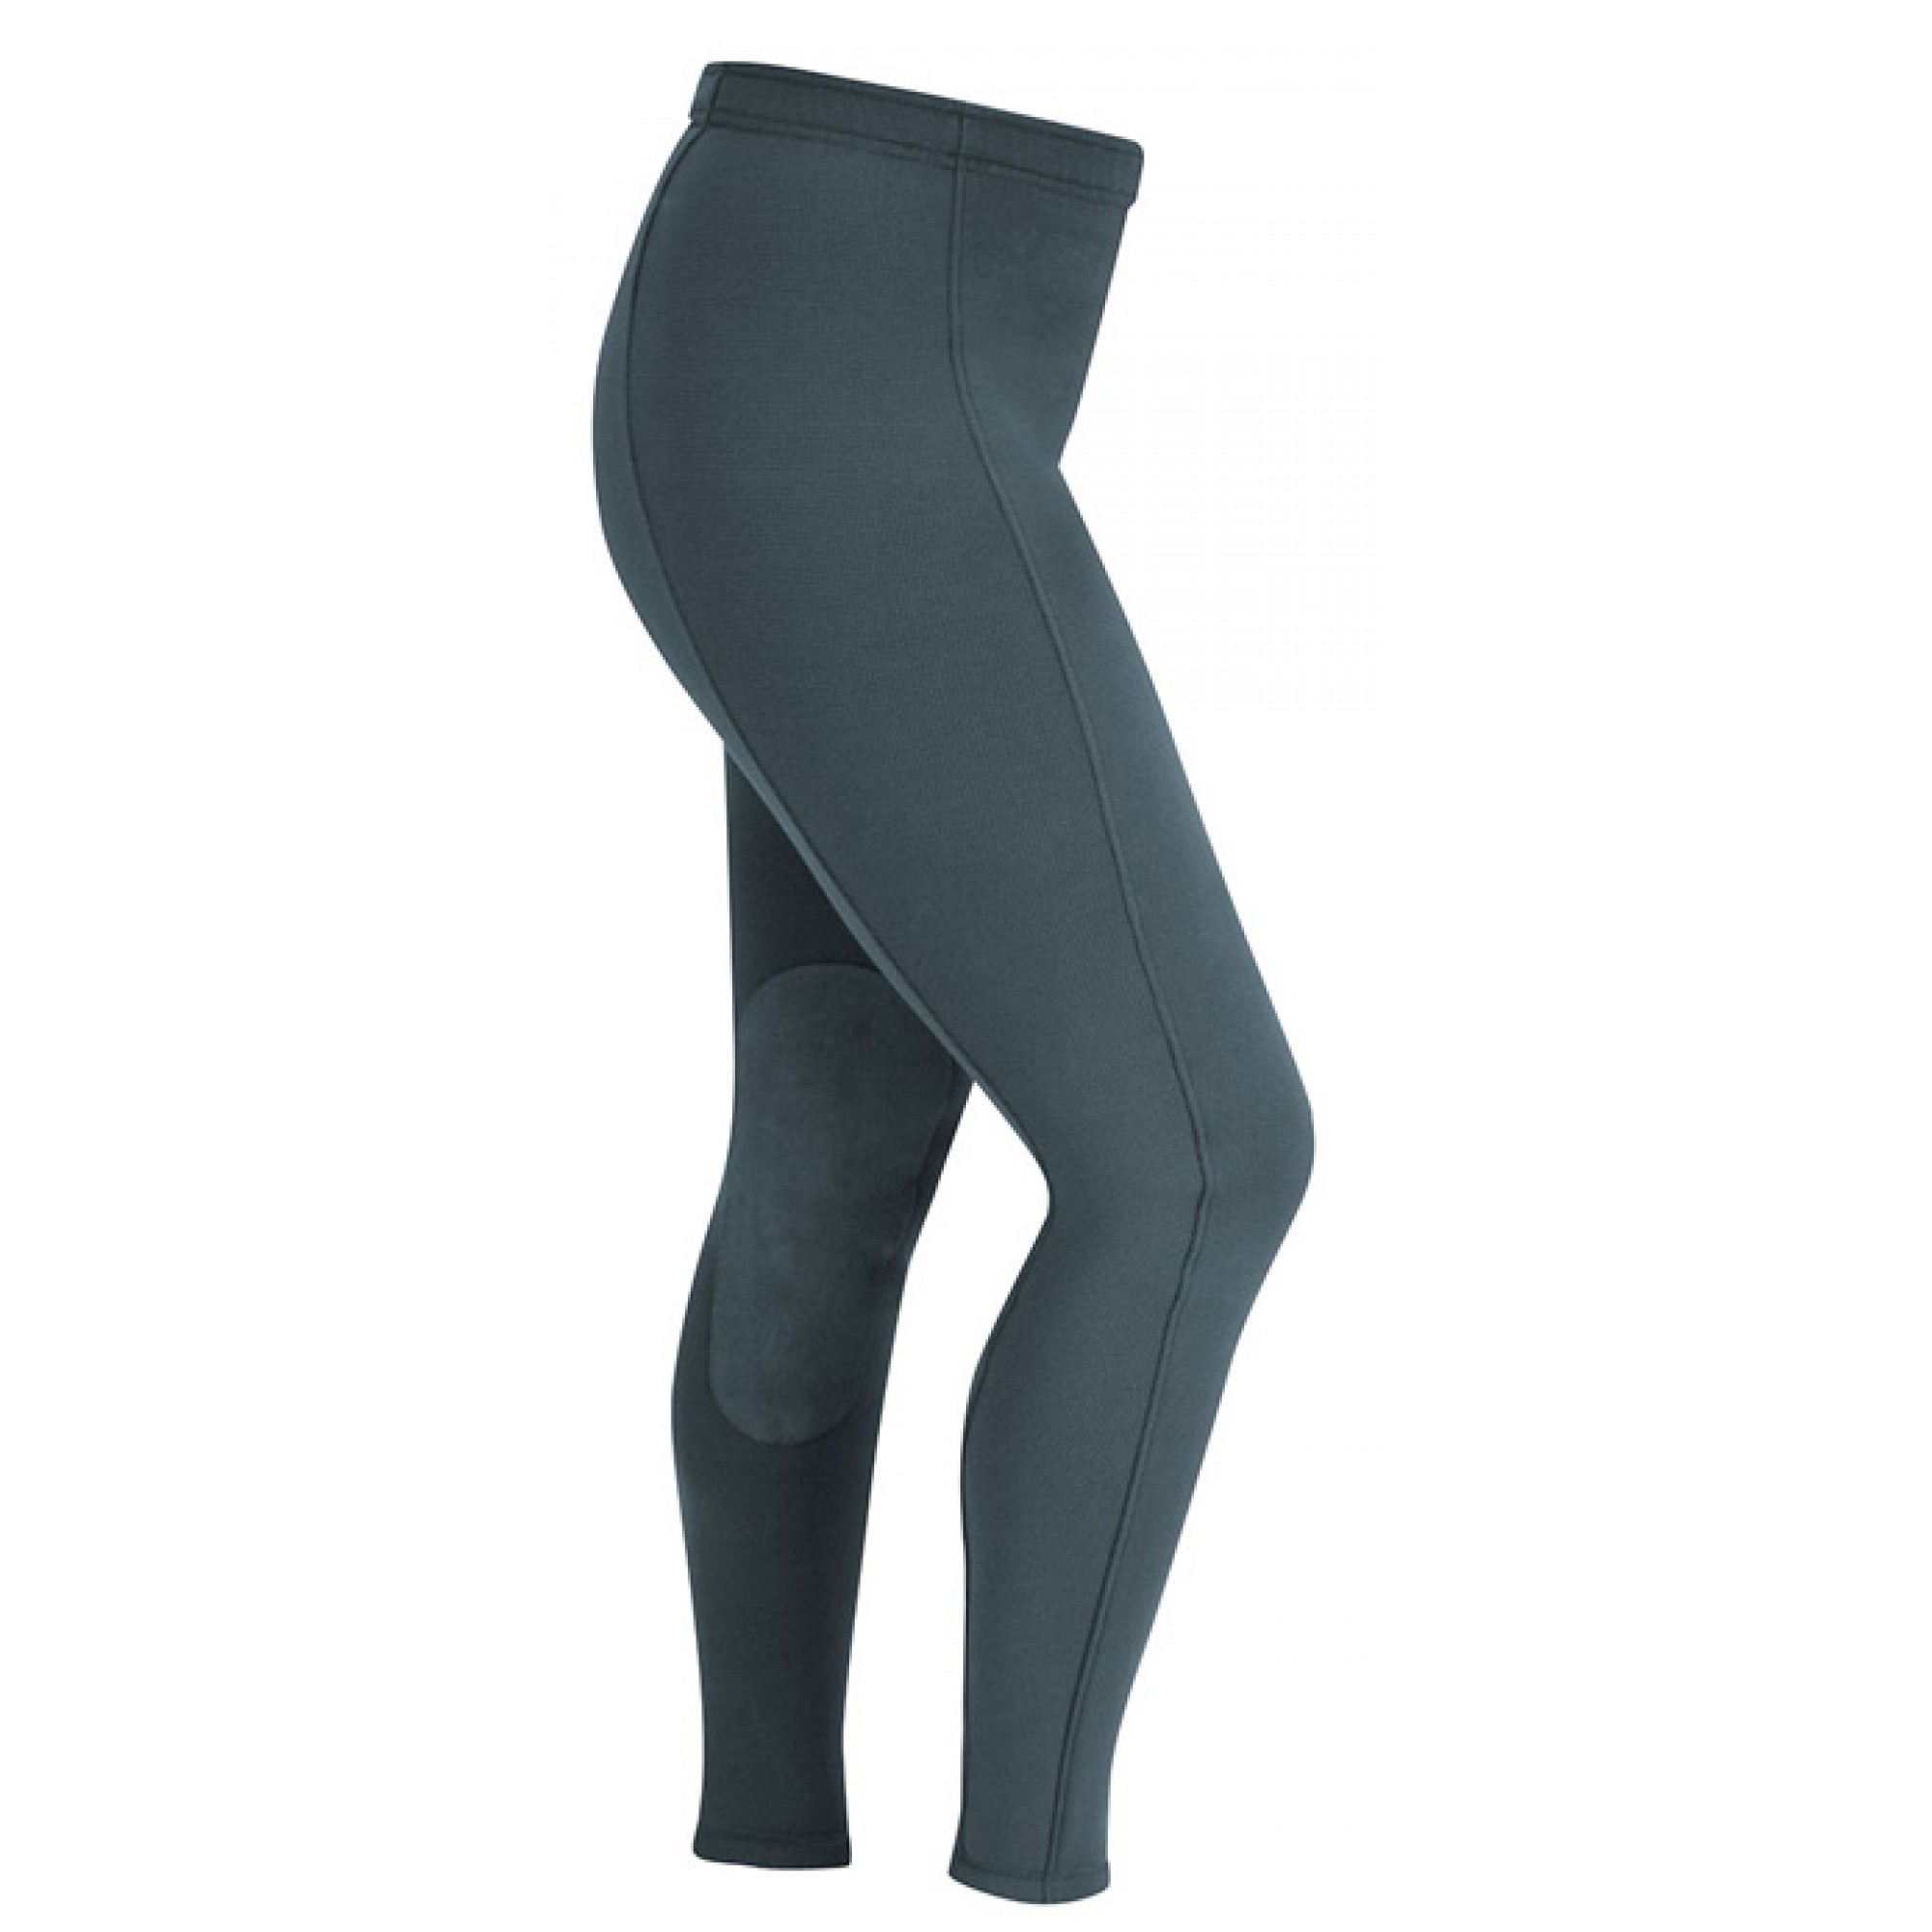 Jezdecké kalhoty Wind Pro® Softshell kolenní záplaty dlouhé velikosti